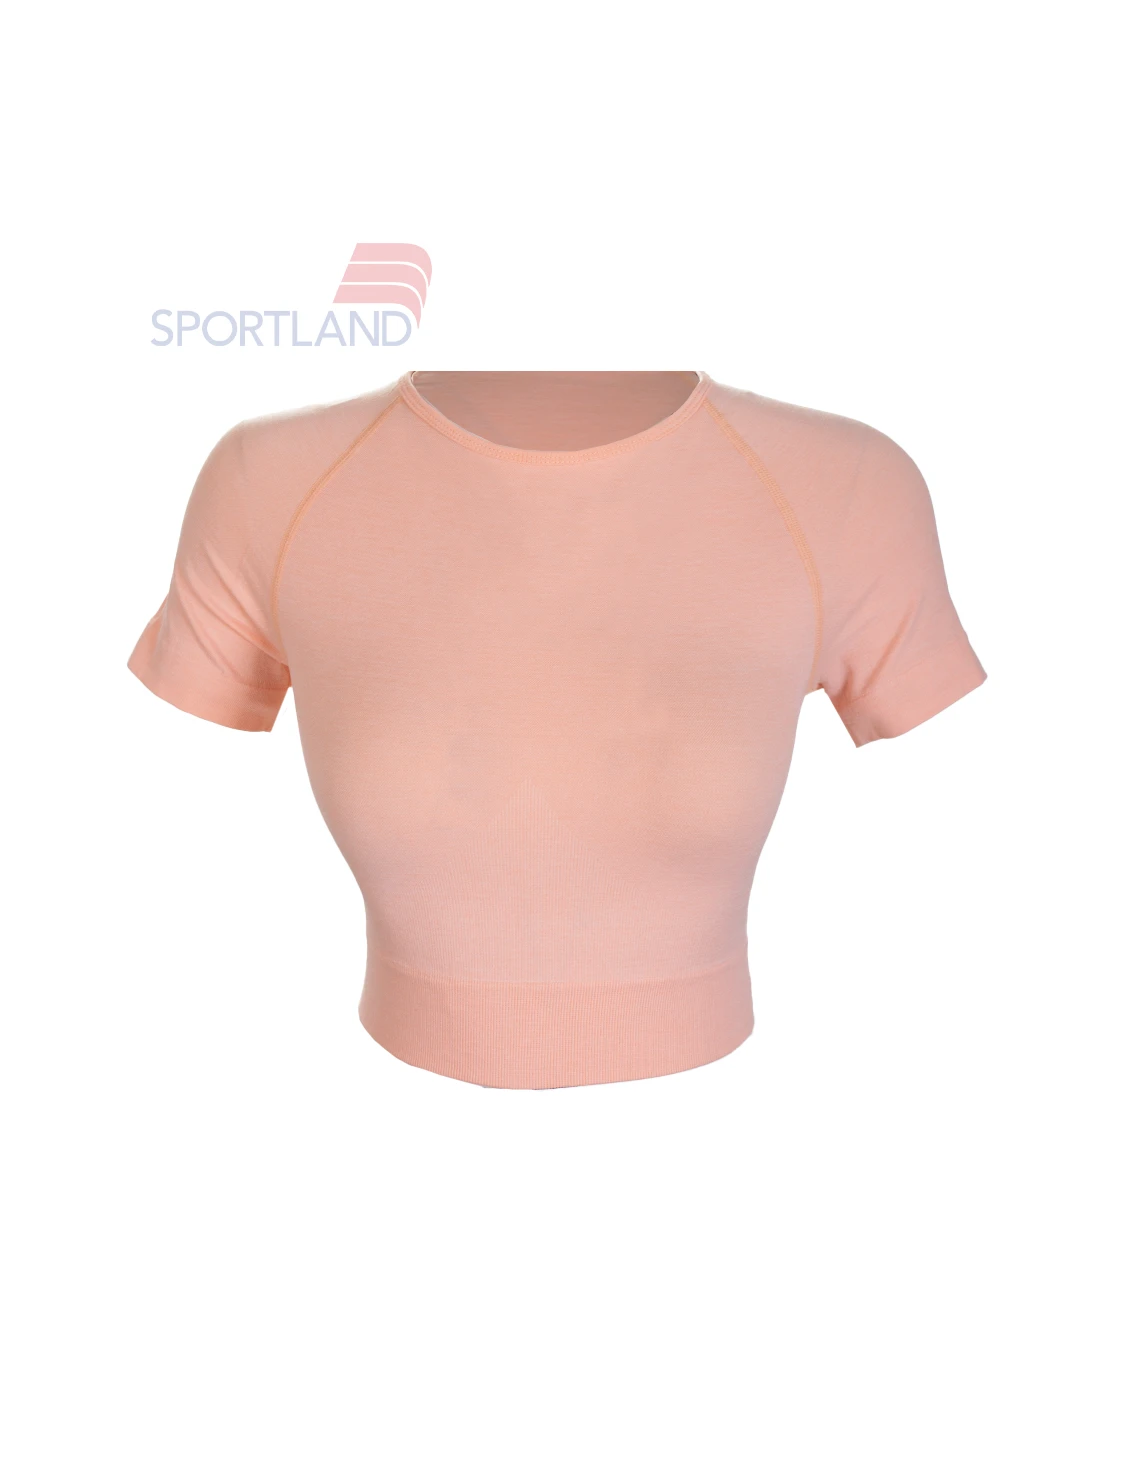 تی شرت ورزشی زنانه اسپورتلند Florentina W